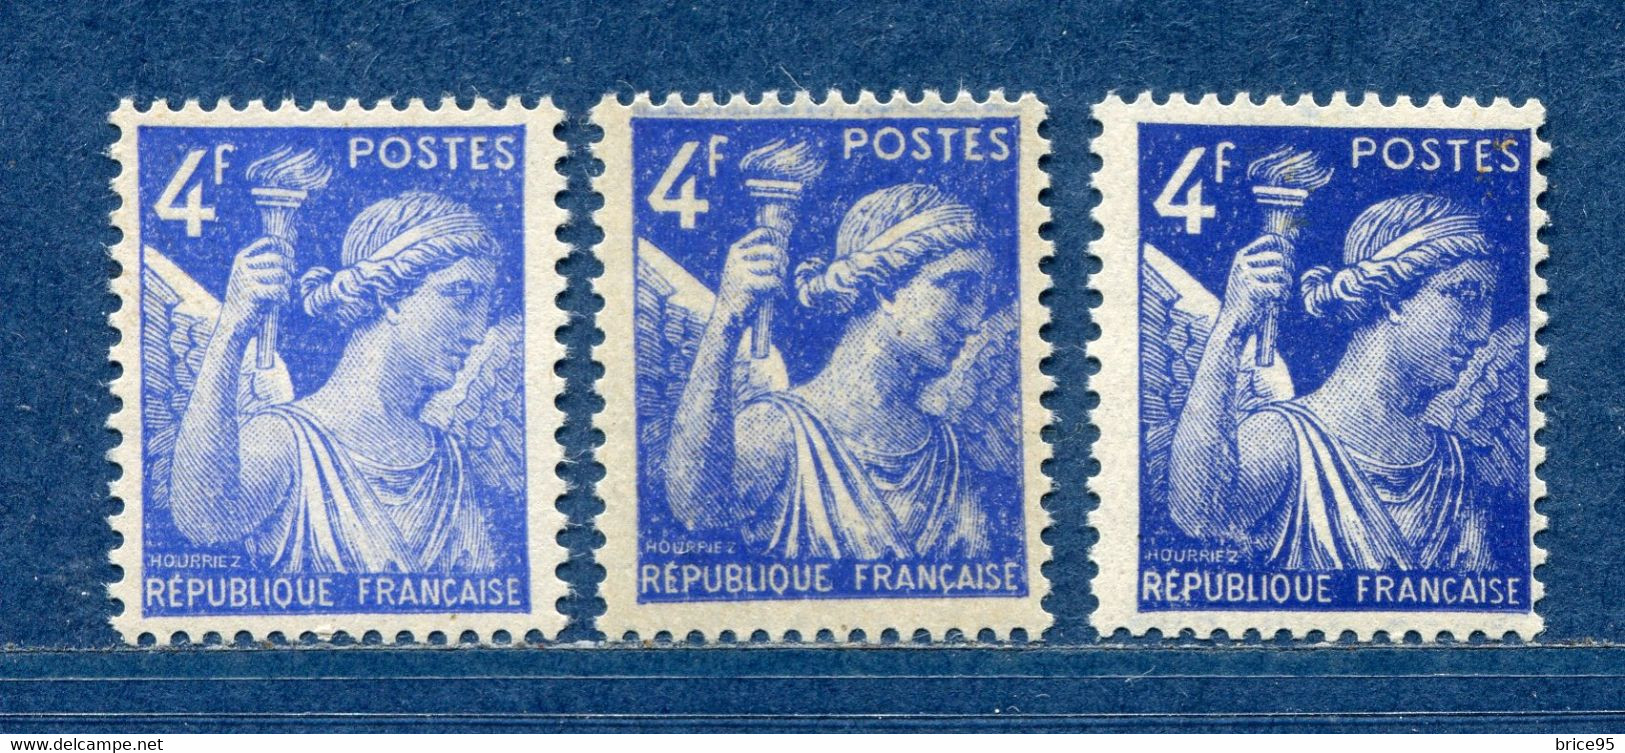 ⭐ France - Variété - YT N° 656 - Couleurs - Pétouilles - Neuf Sans Charnière - 1944 ⭐ - Ongebruikt